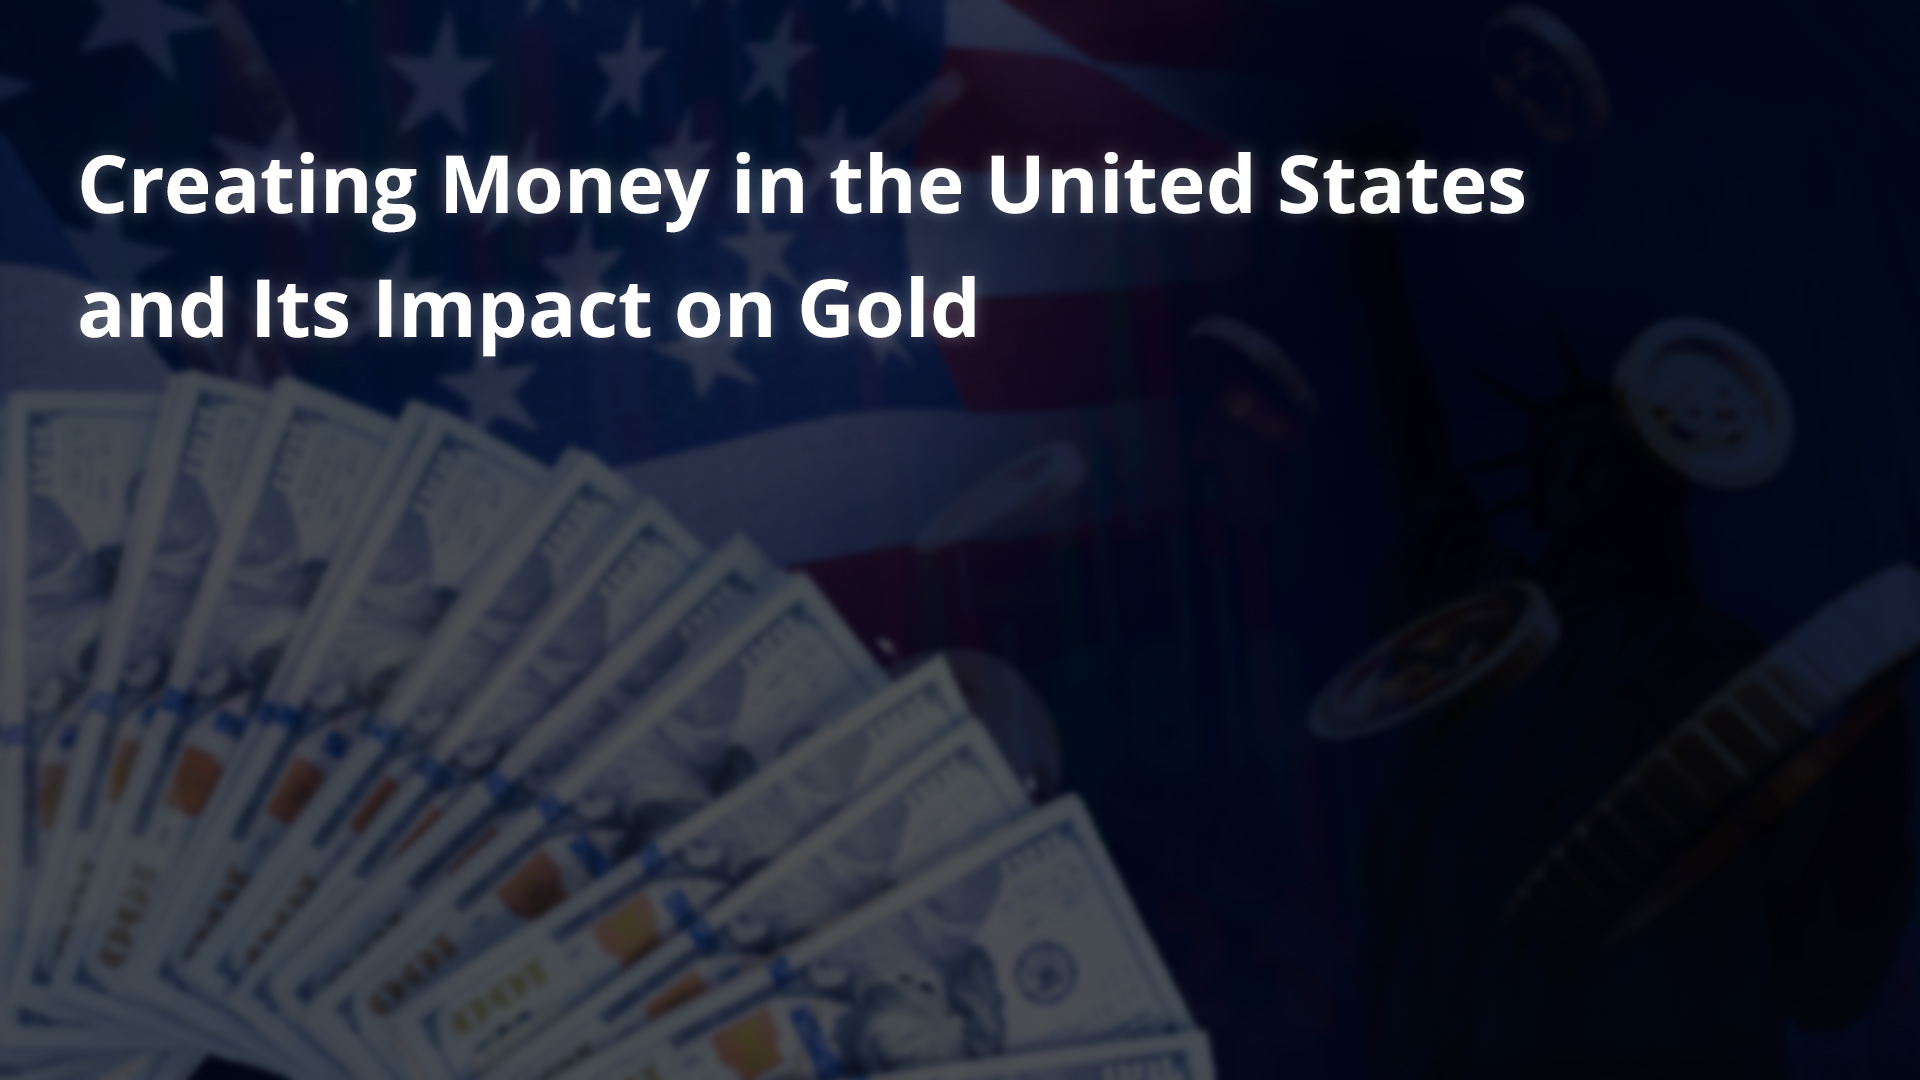 La création de monnaie aux États-Unis et son impact sur l’or